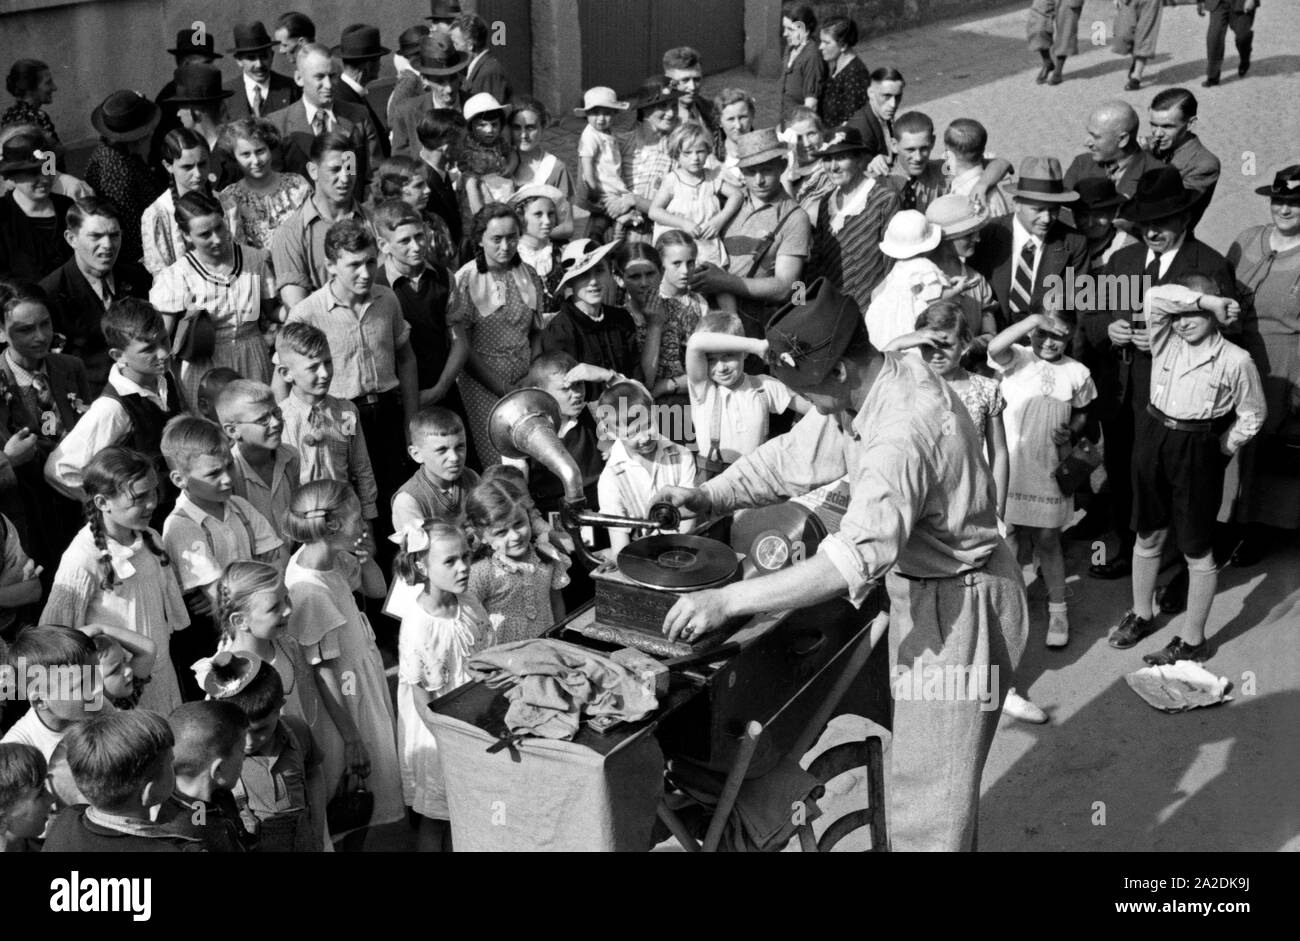 Ein Schausteller spielt Schellackplatten in einem grammofon beim Rettichfest in Schifferstadt, Deutschland, 1930er Jahre. Ein carney Spielen sofort Schellack-Platten Datensätze auf ein grammophon an der jährlichen Rettich Messe in Schifferstadt, Deutschland 1930. Stockfoto